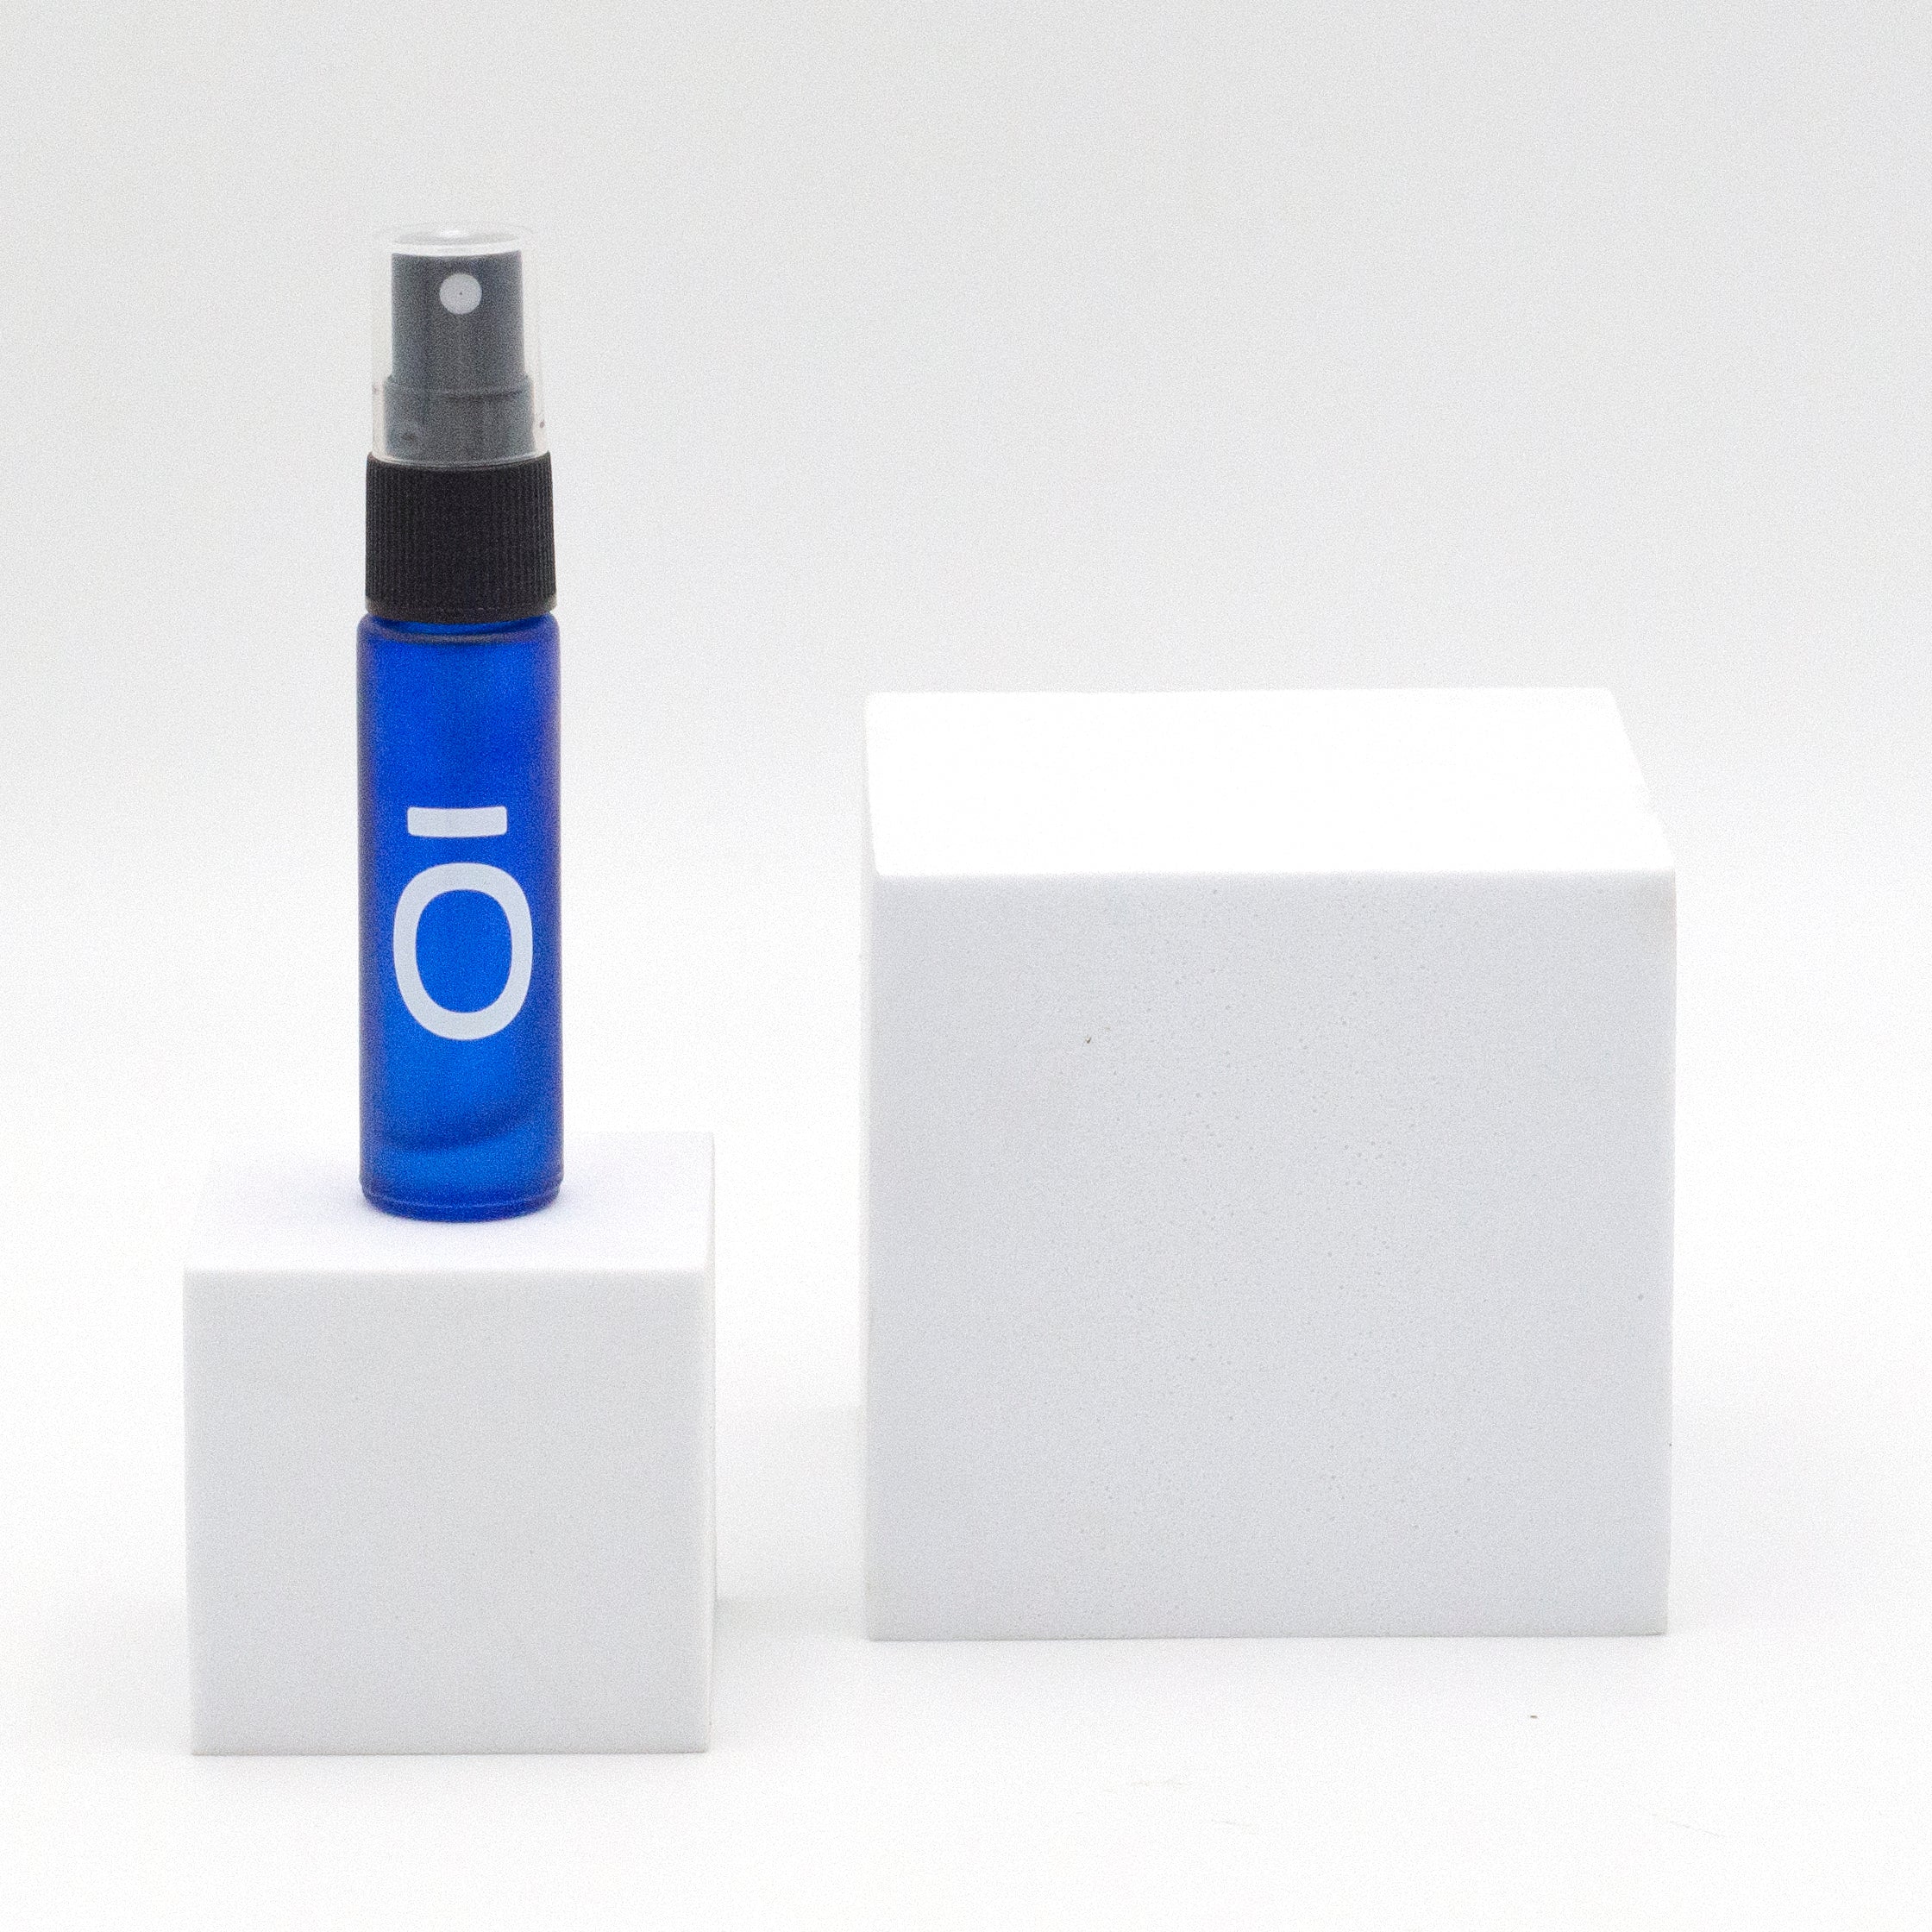 10ml butelka szklana matowa, dōTERRA, z nasadką spray (1szt) niebieska